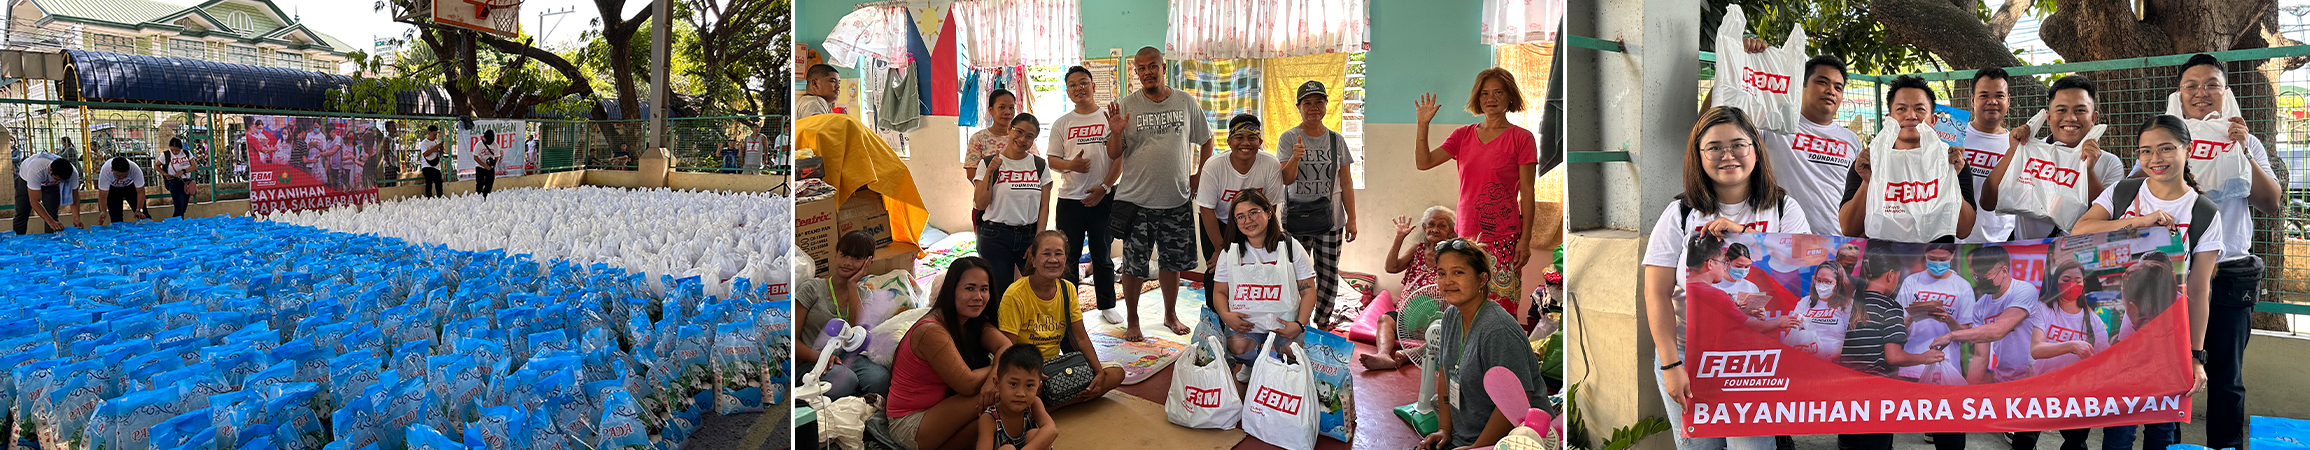 La FBM Foundation ayuda a 2.000 habitantes de Cavite, Filipinas, con una operación de emergencia